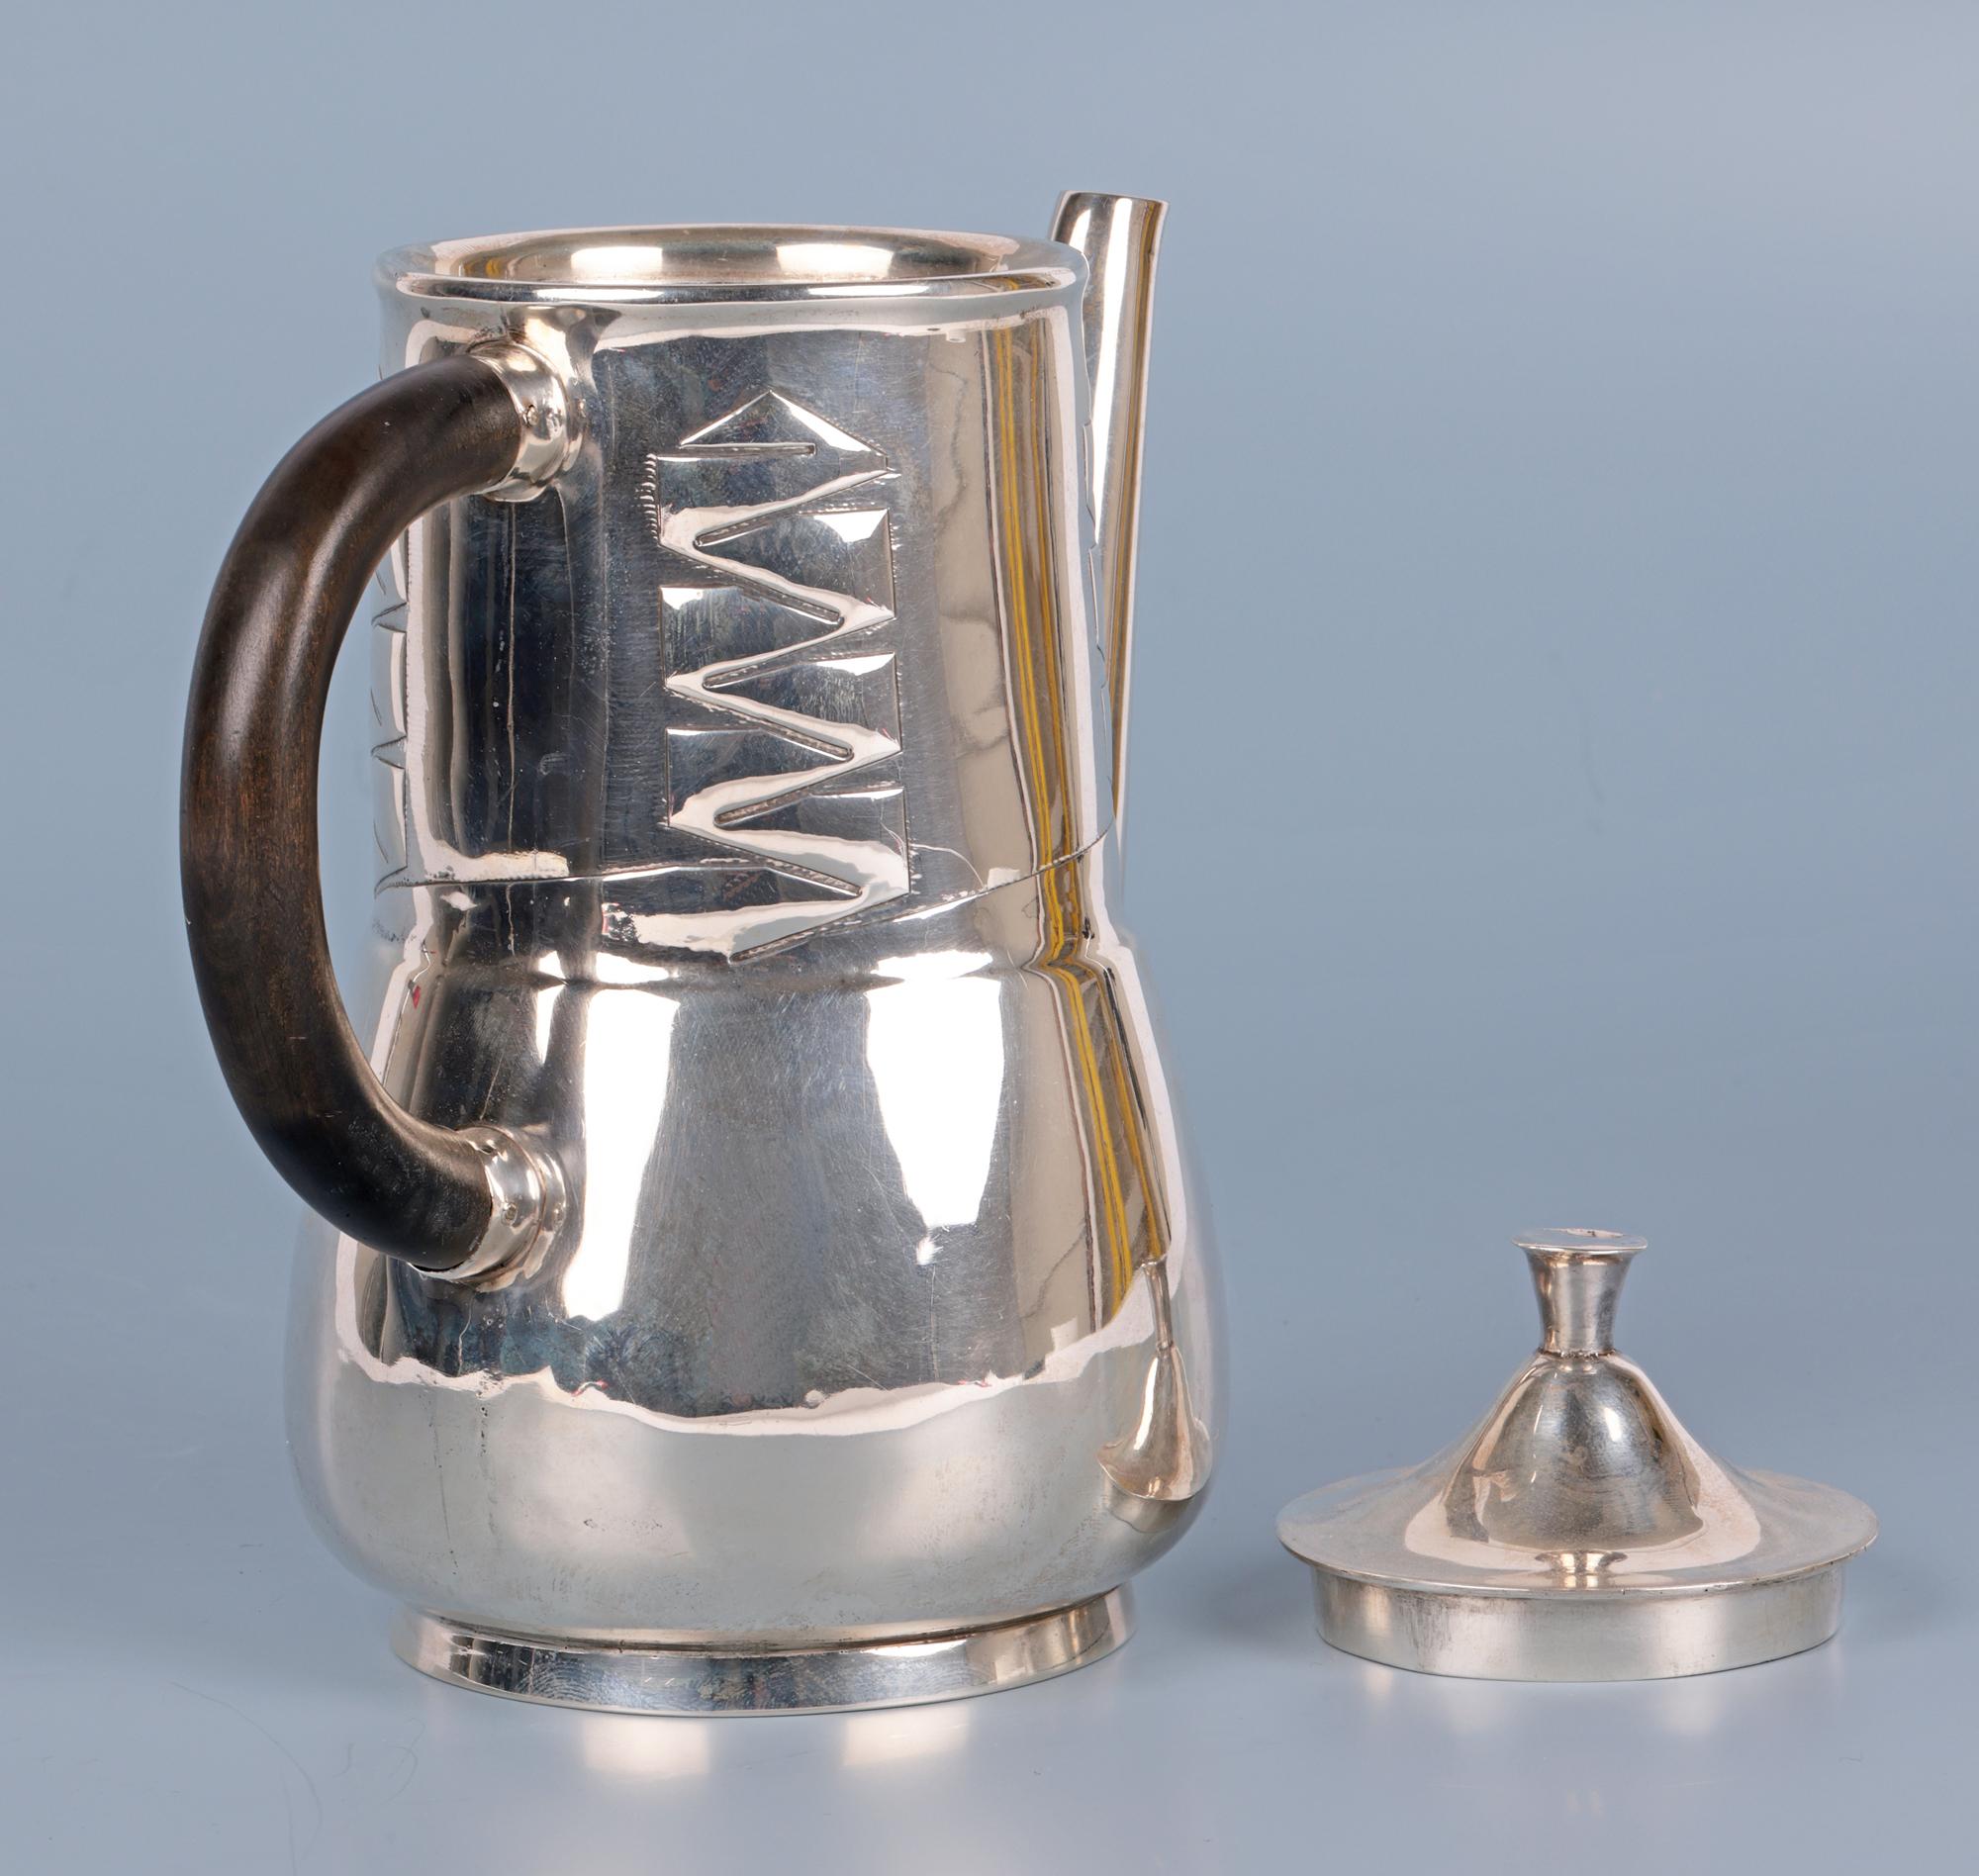  Archibald Knox Liberty & Co Silver Art Nouveau Silver Teapot For Sale 7